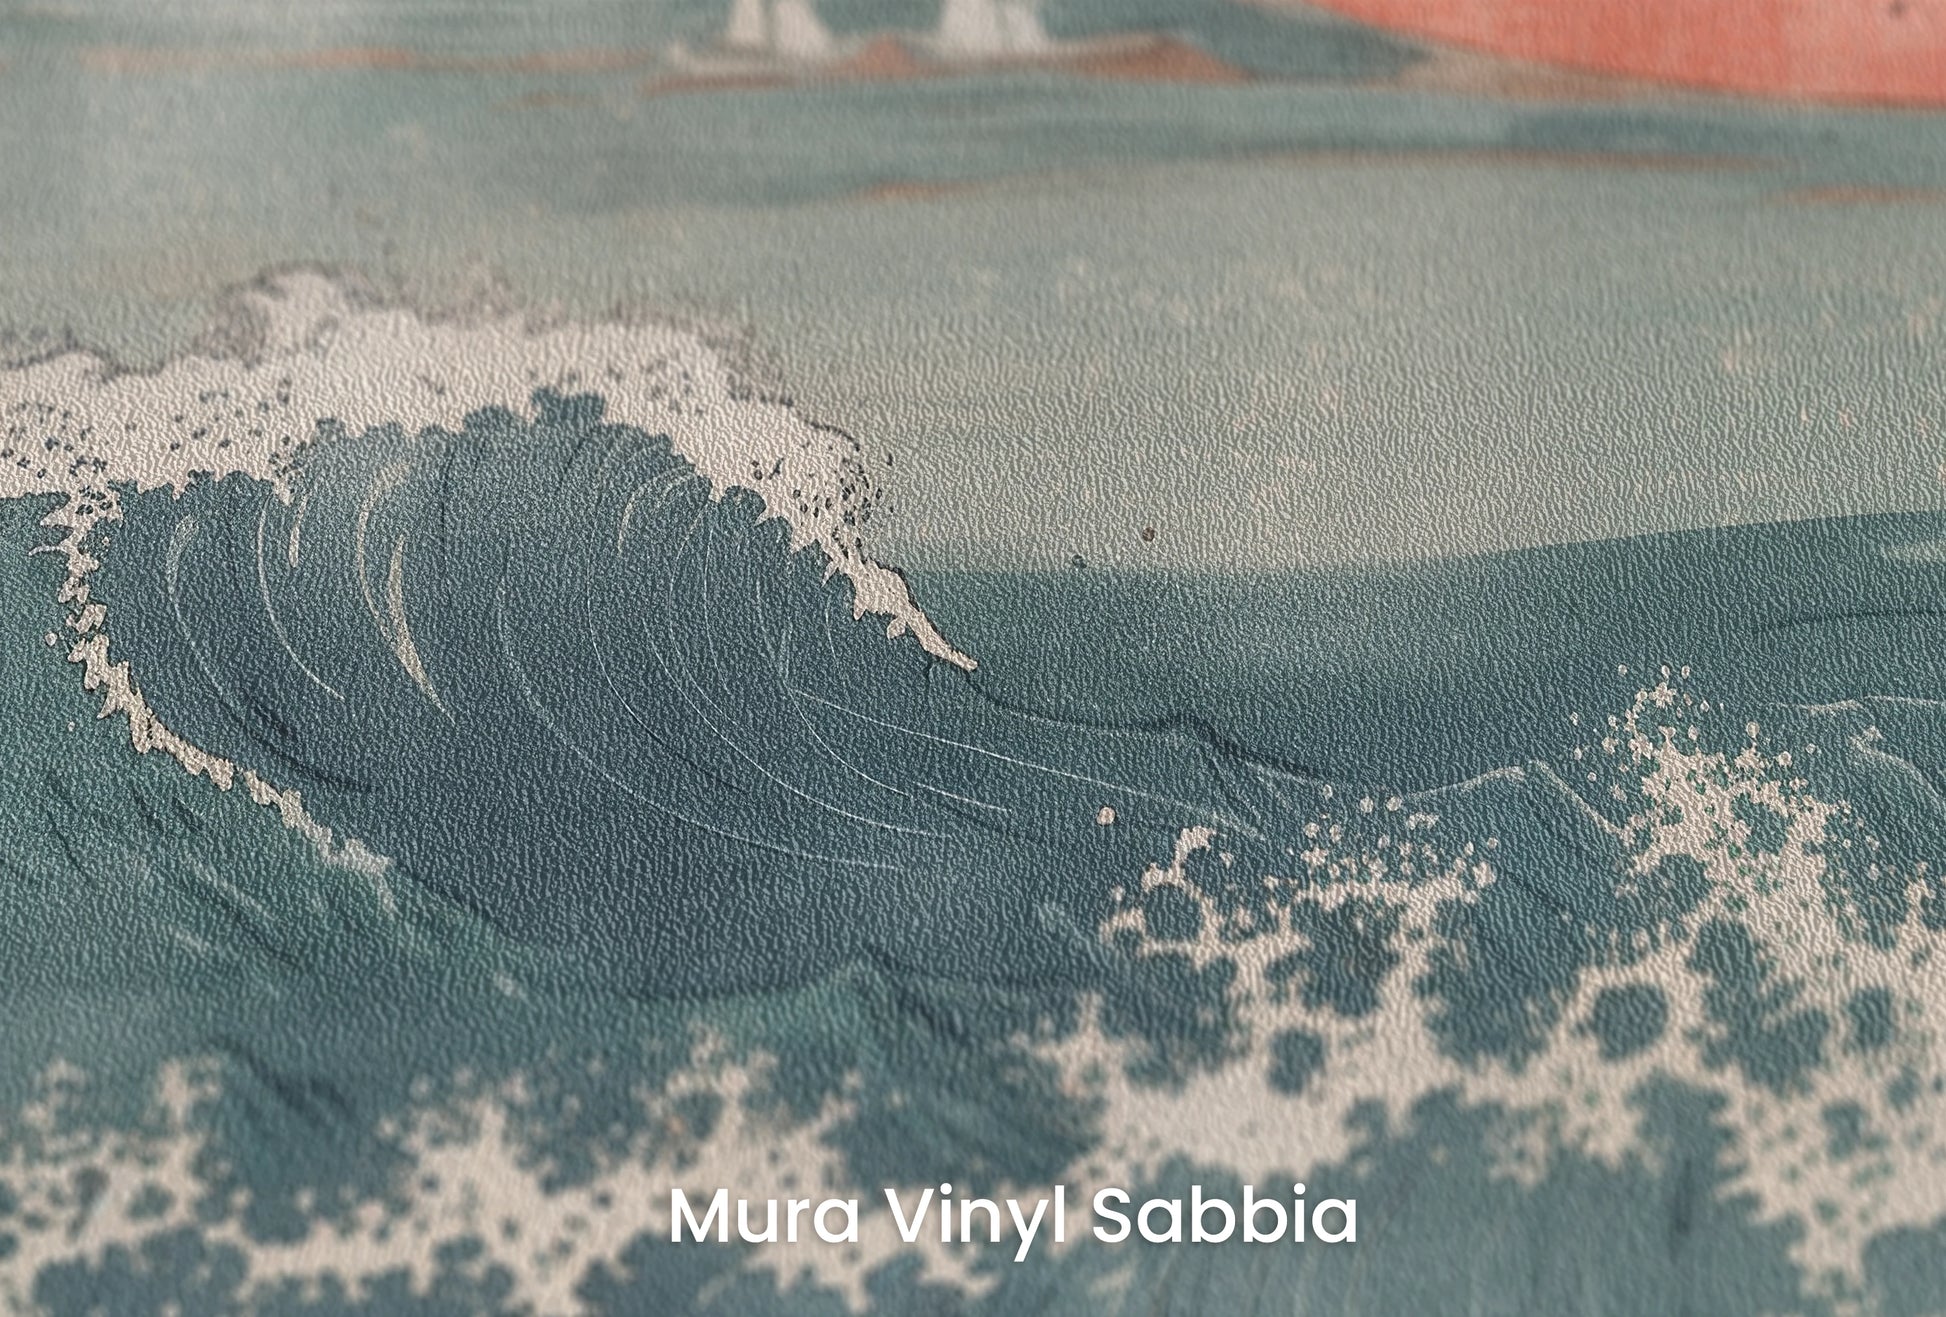 Zbliżenie na artystyczną fototapetę o nazwie Fuji's Serenity na podłożu Mura Vinyl Sabbia struktura grubego ziarna piasku.